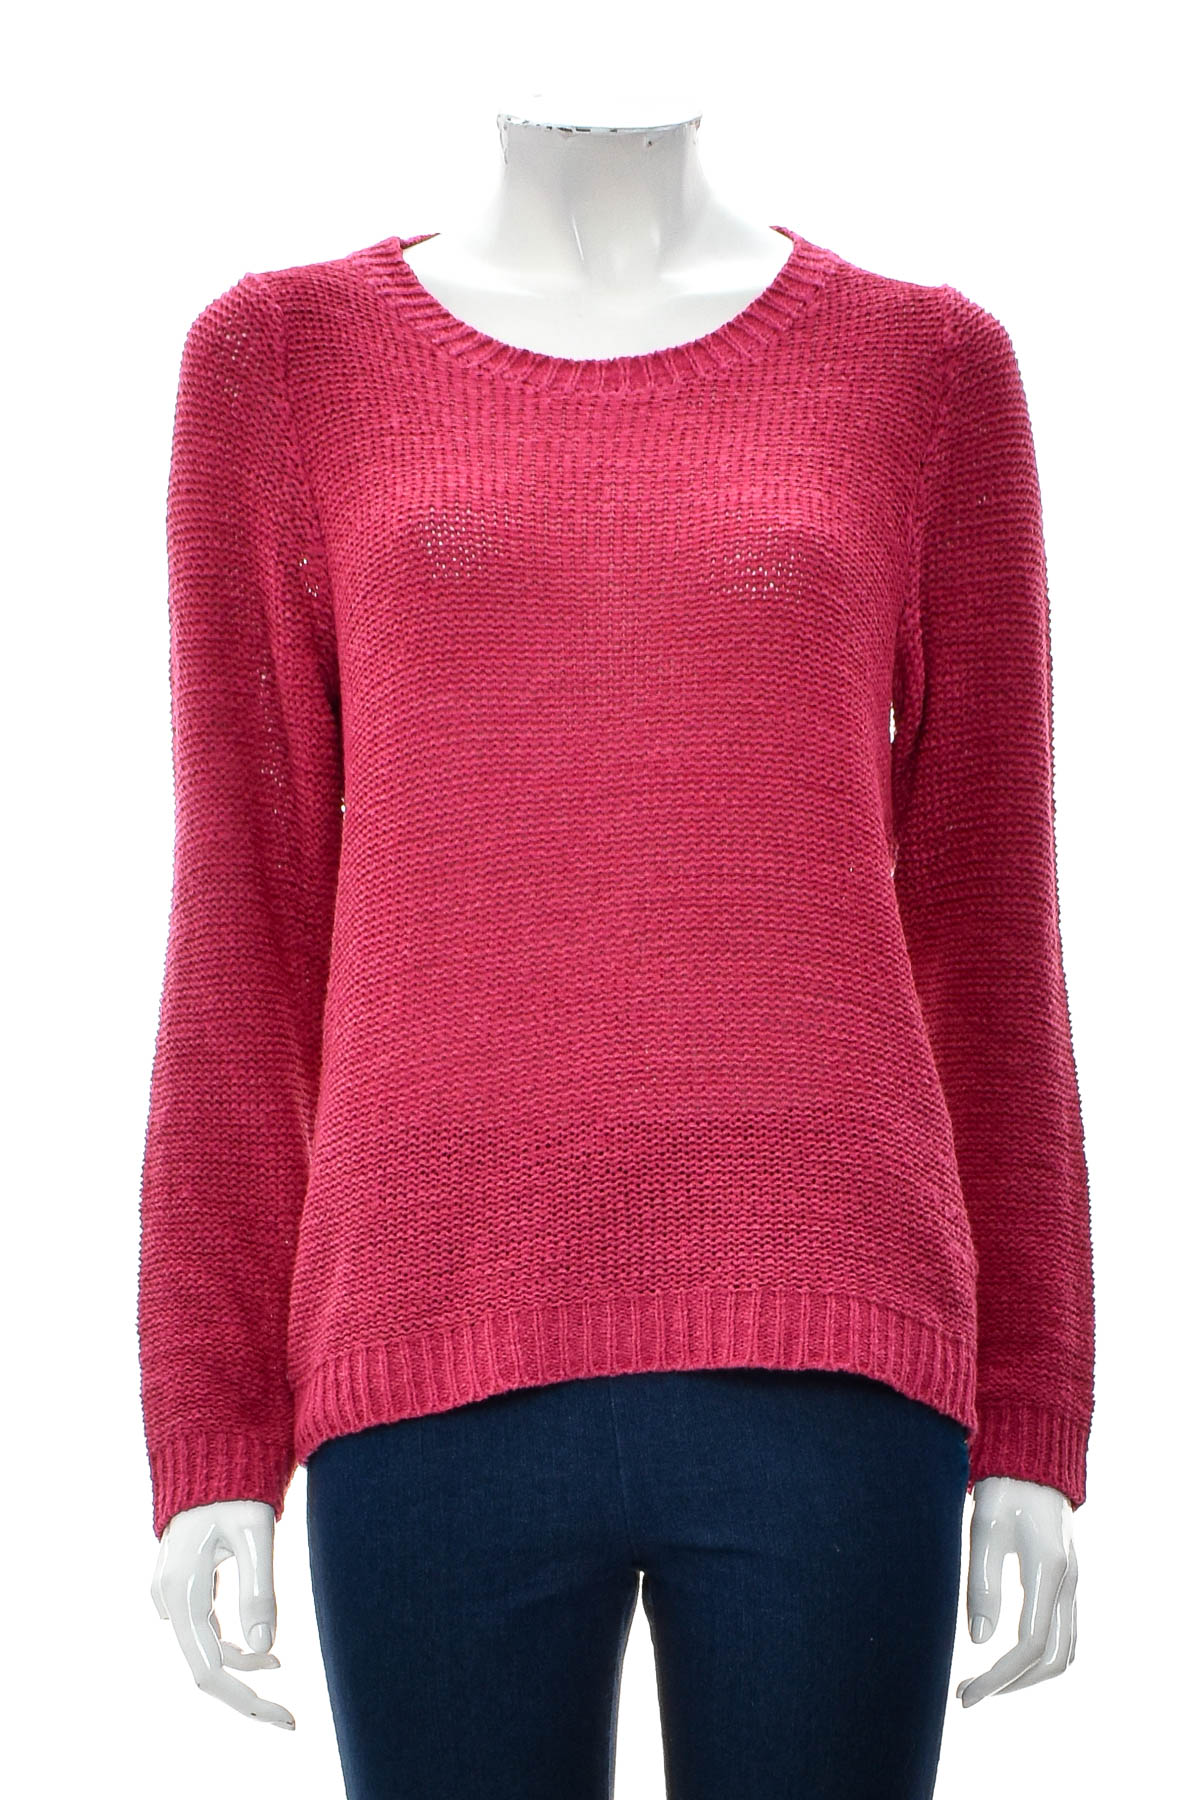 Women's sweater - Dress In - 0